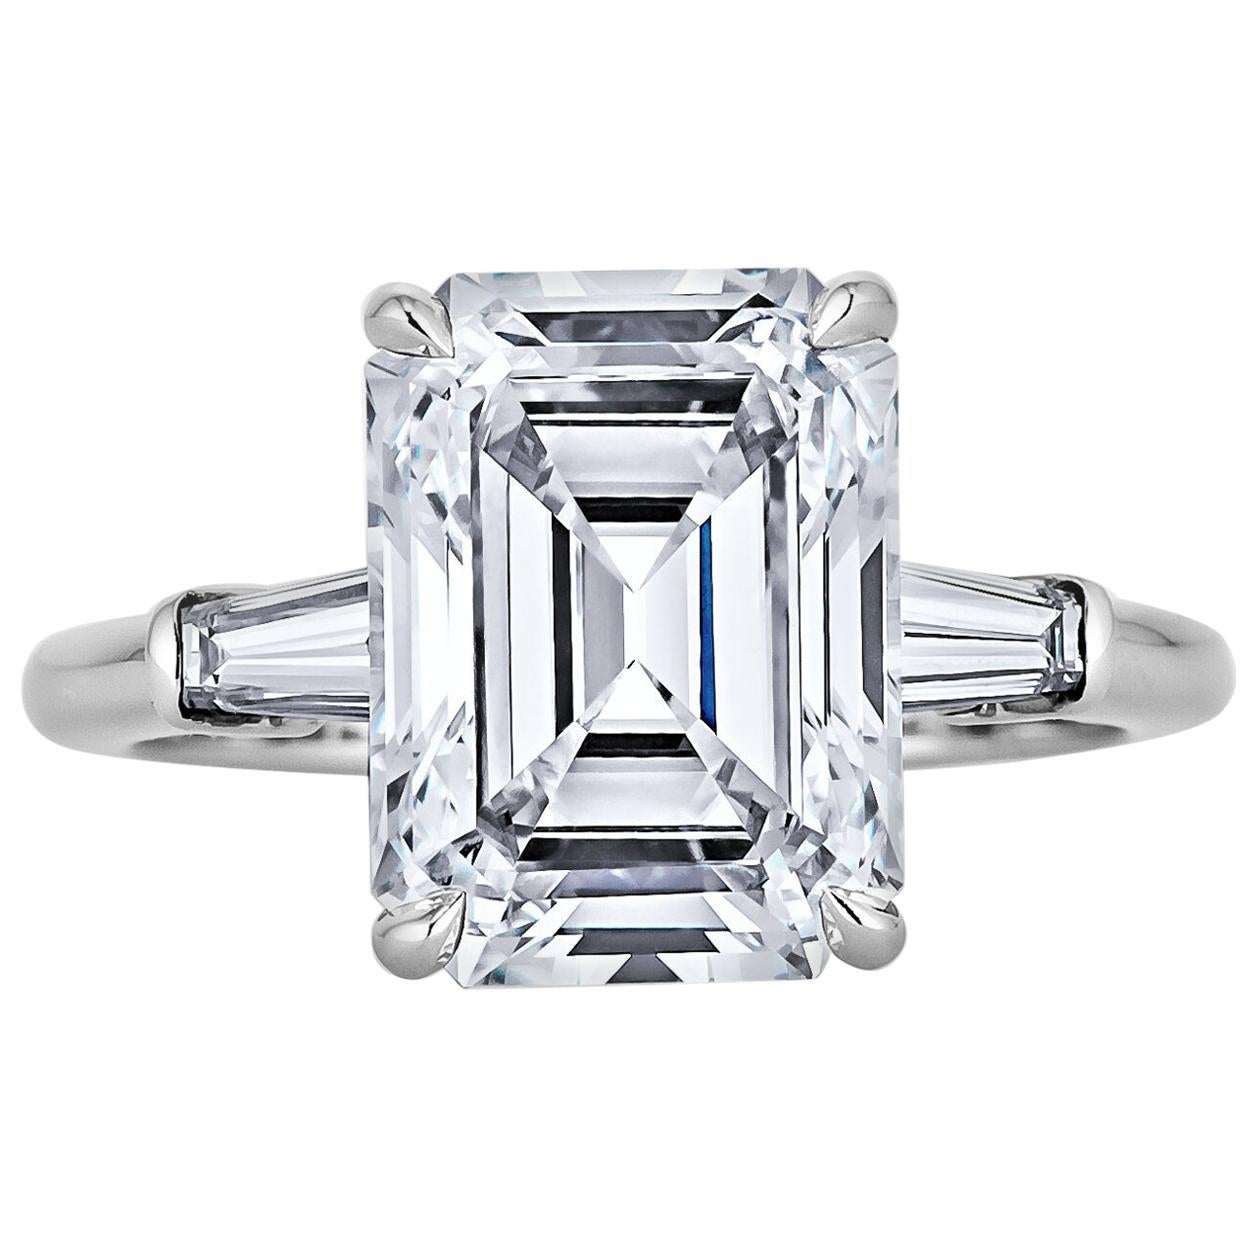 4.54 Carat Emerald Cut Diamond Platinum Engagement Ring